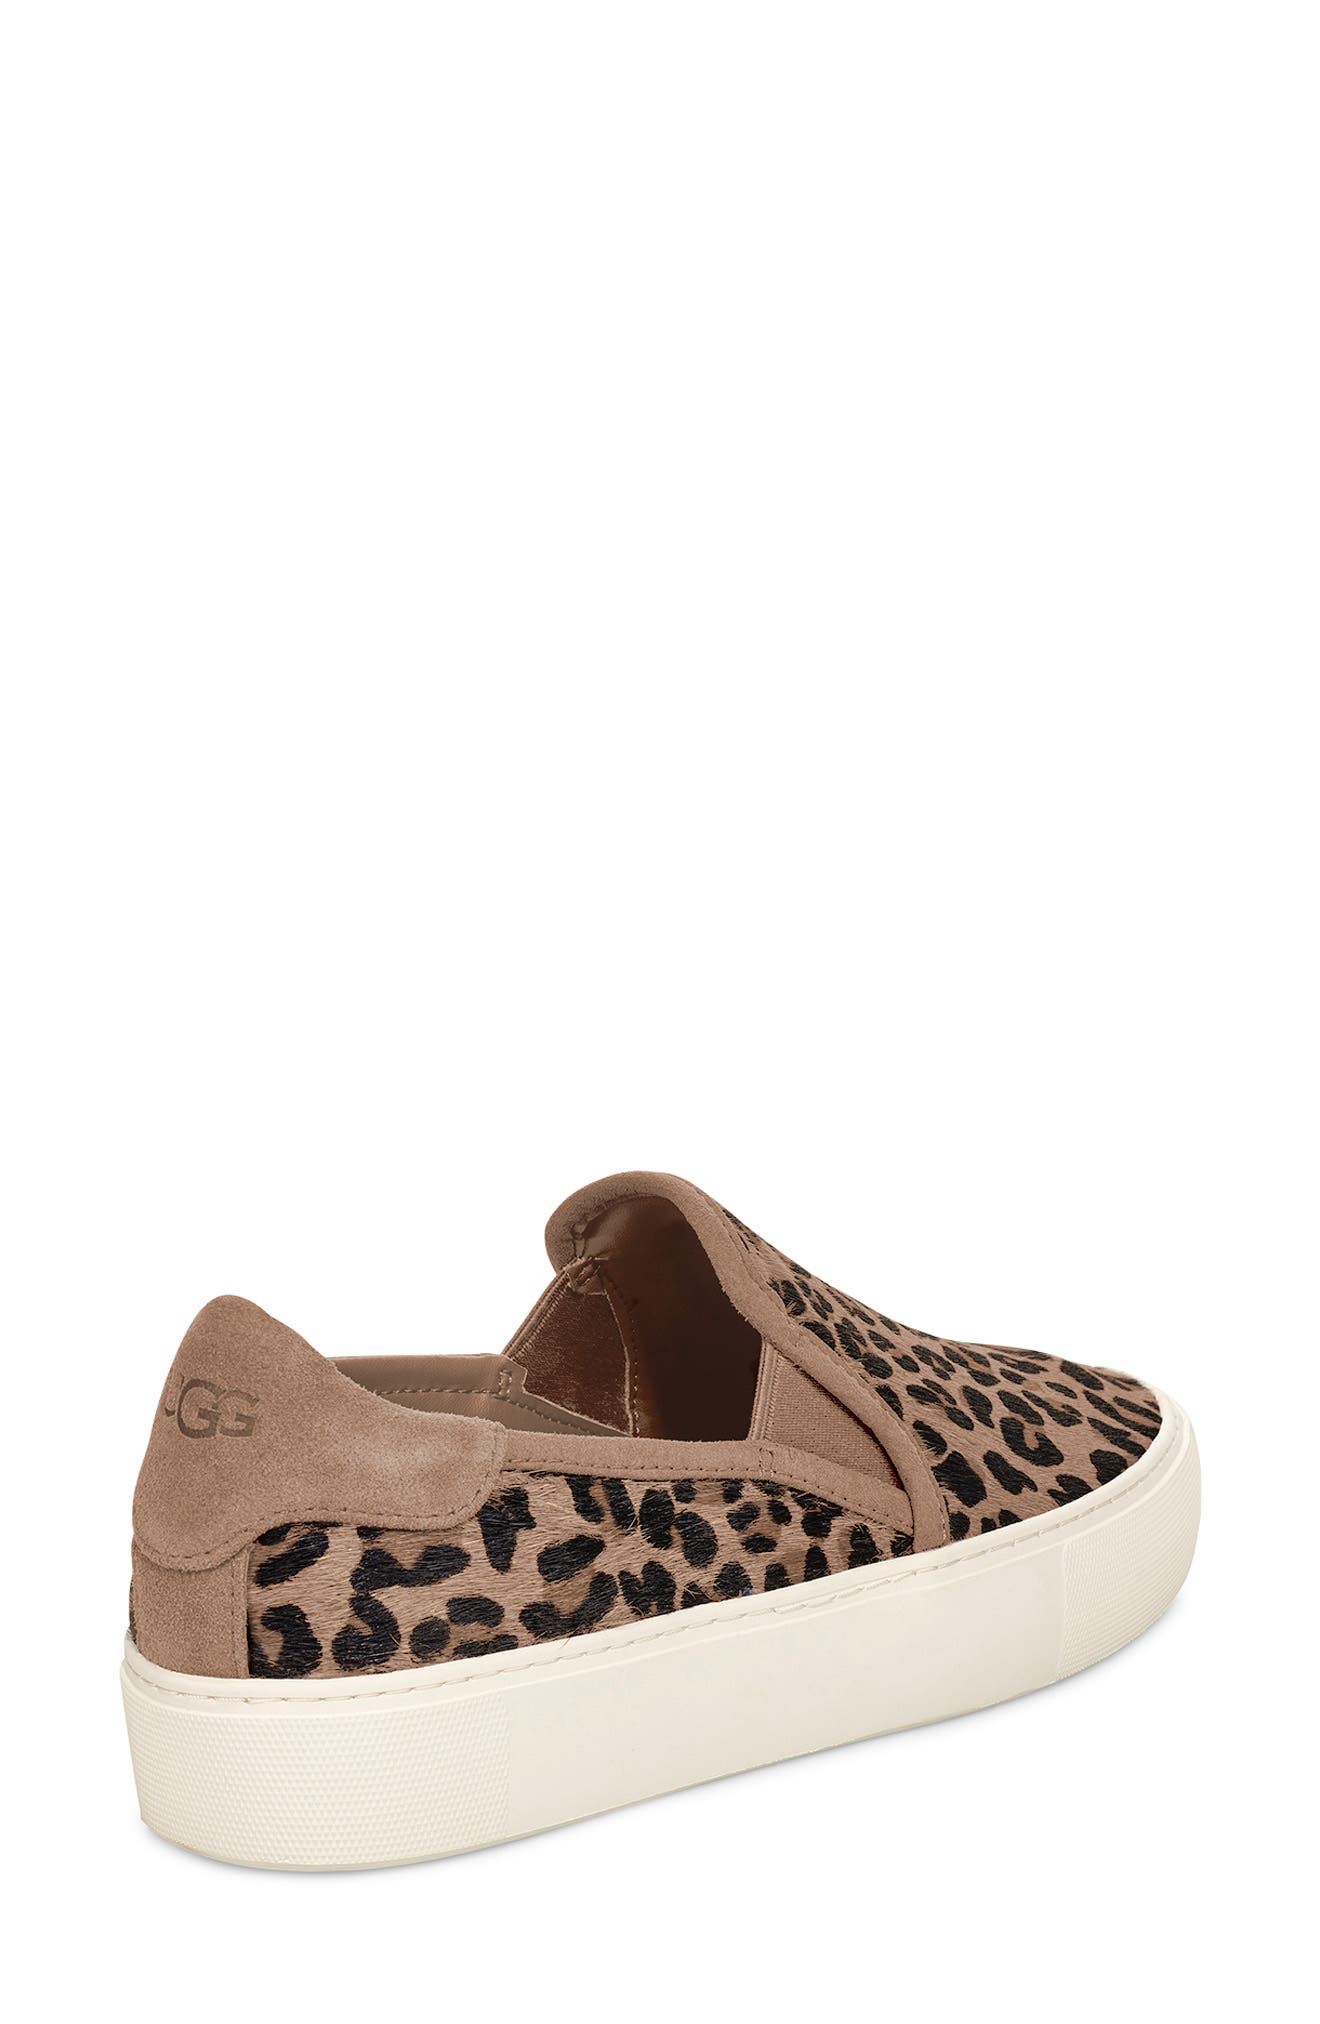 ugg leopard slip on sneakers